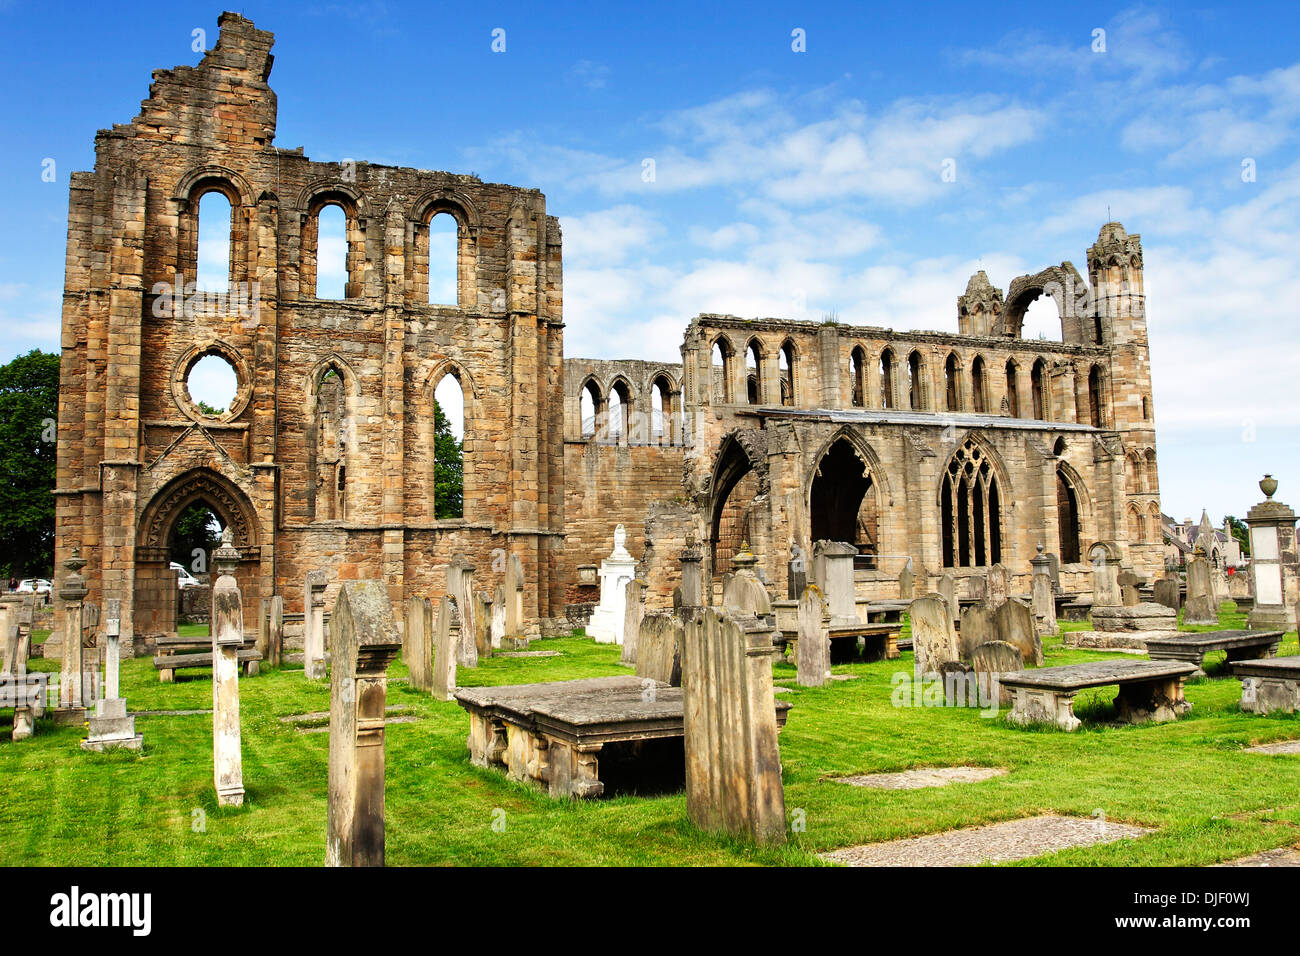 Une vue des ruines et des tombes de la cathédrale médiévale à Elgin dans les Highlands d'Ecosse. Banque D'Images